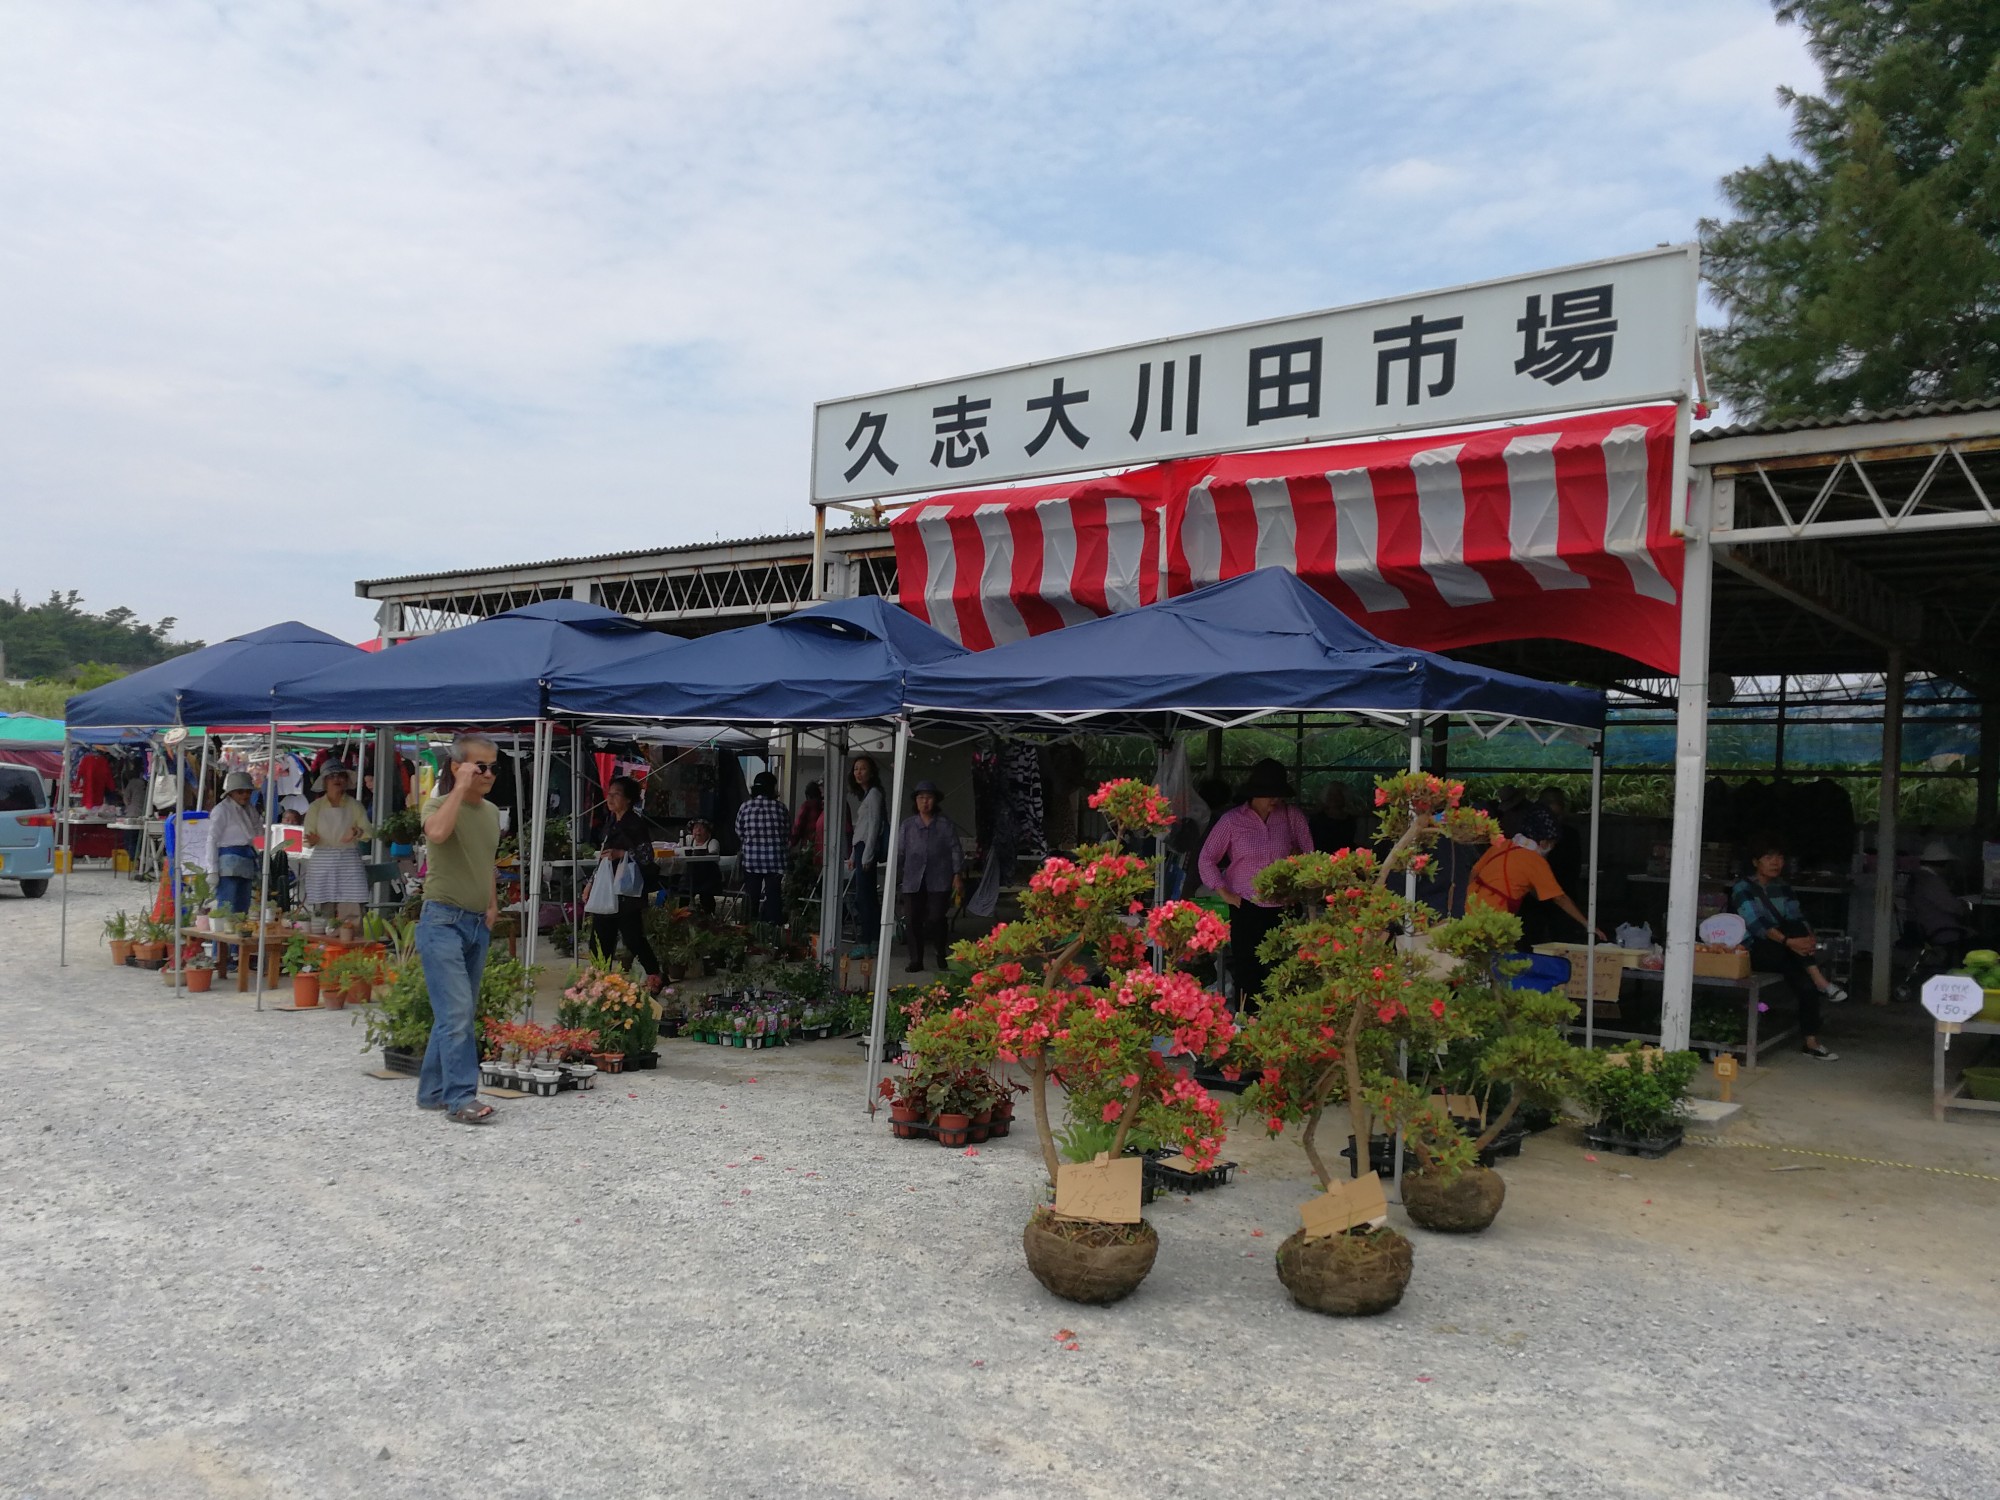 名護市の久志大川田市場でやってるフリーマーケットに行ってきた ウリ Okinawa